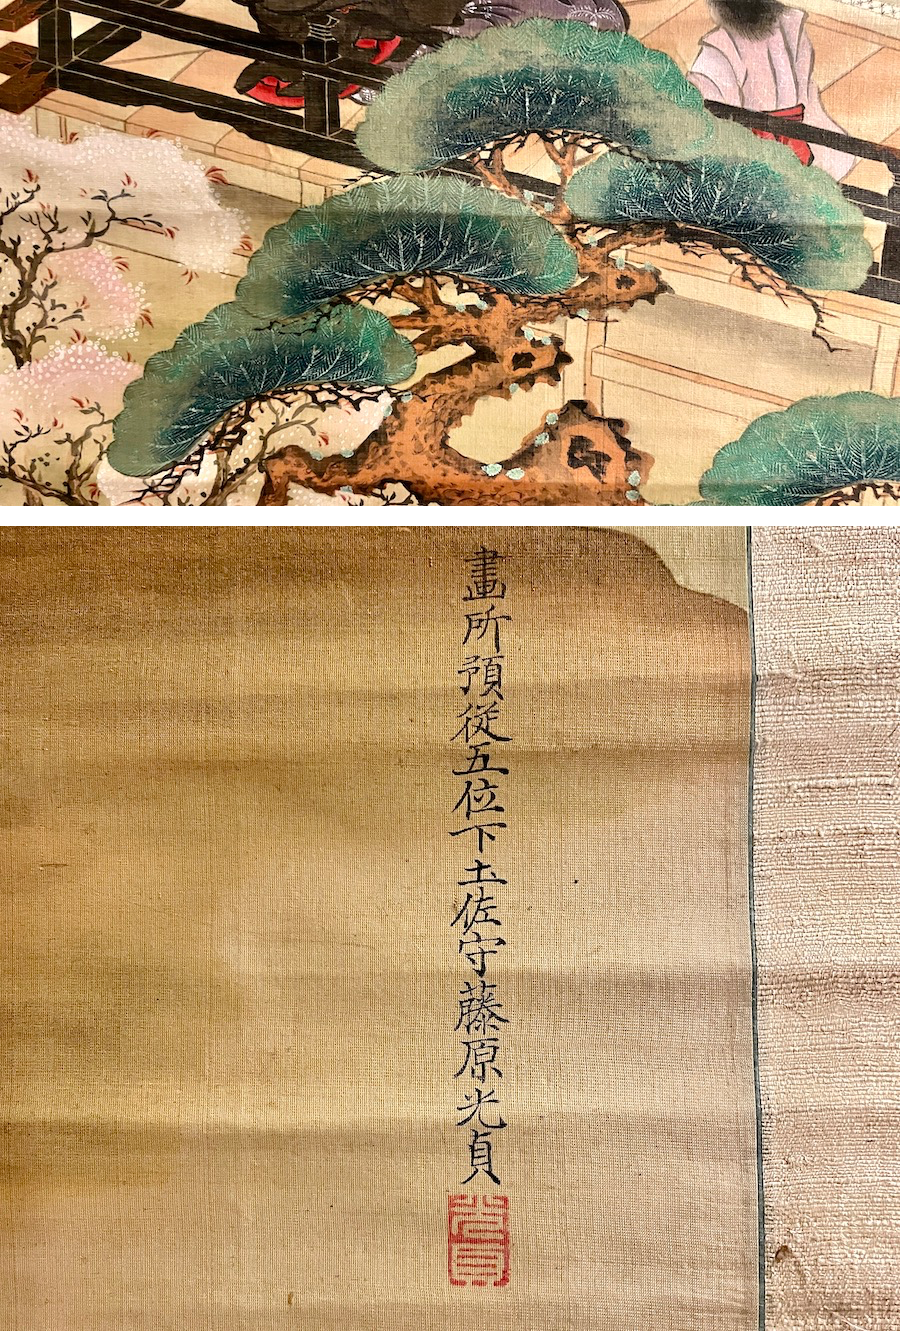 掛軸 小栗春峰『秋草』日本画 絹本 肉筆 共箱付 美品 掛け軸 x02554サイズ